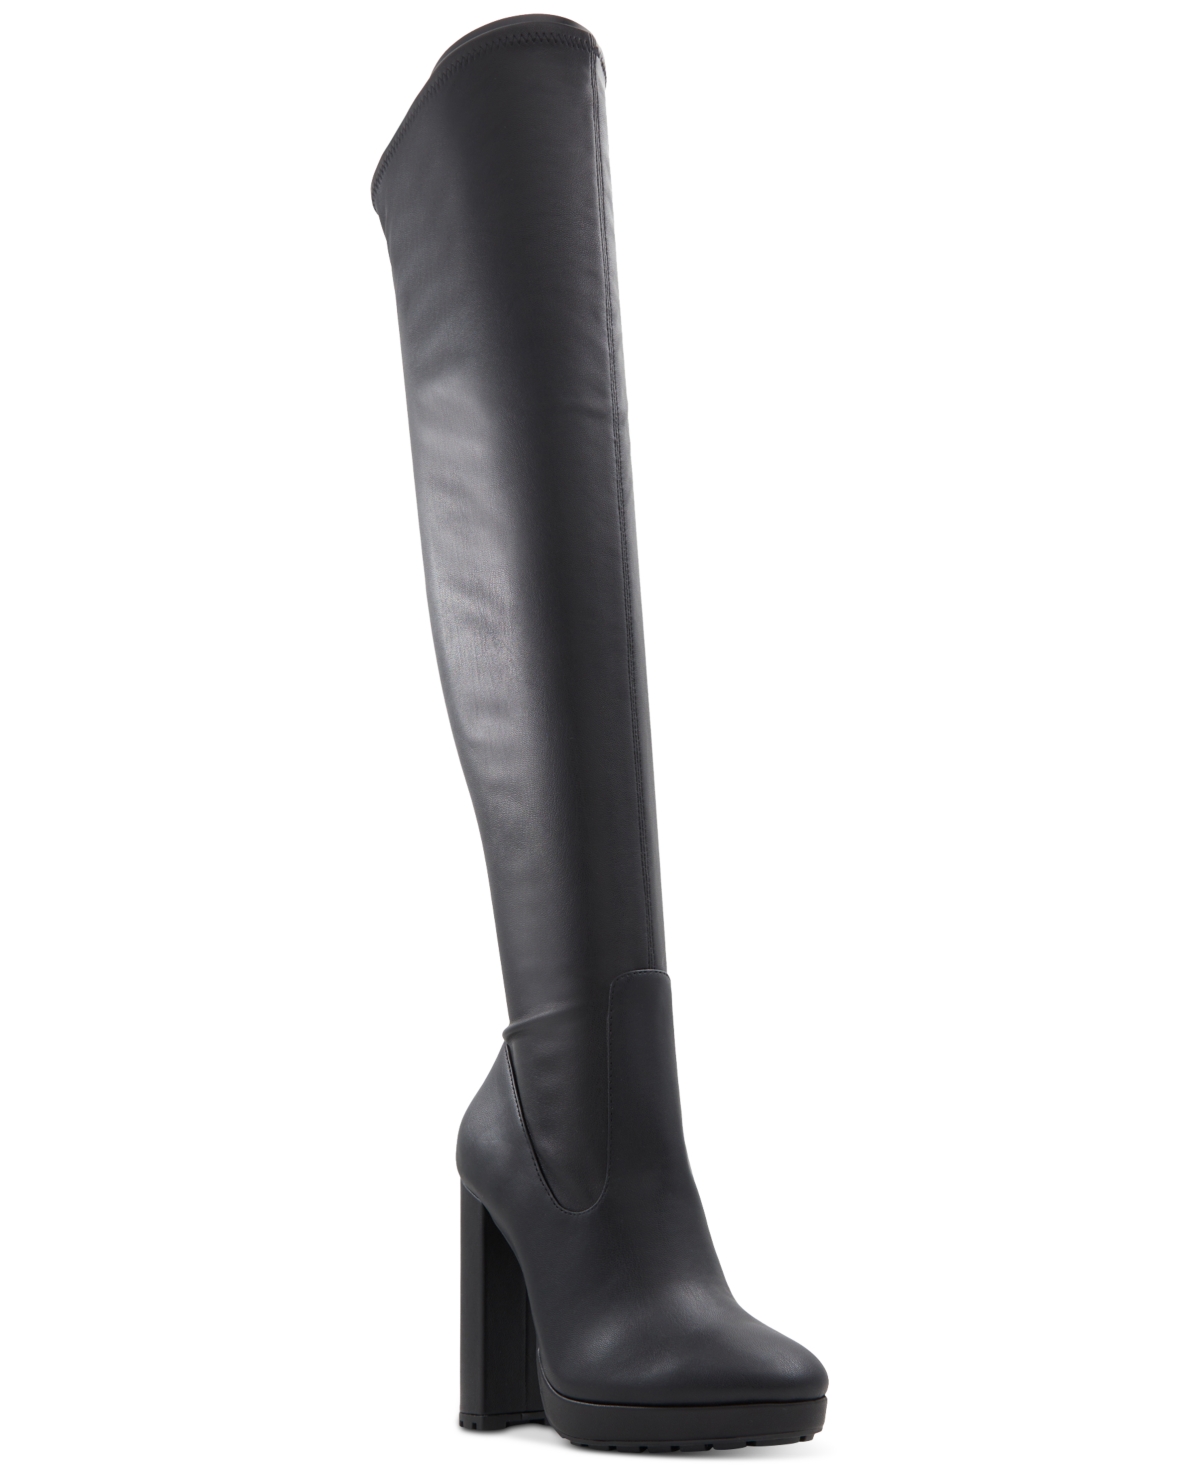 Women's Dallobrelia Tall Dress Boots - Black